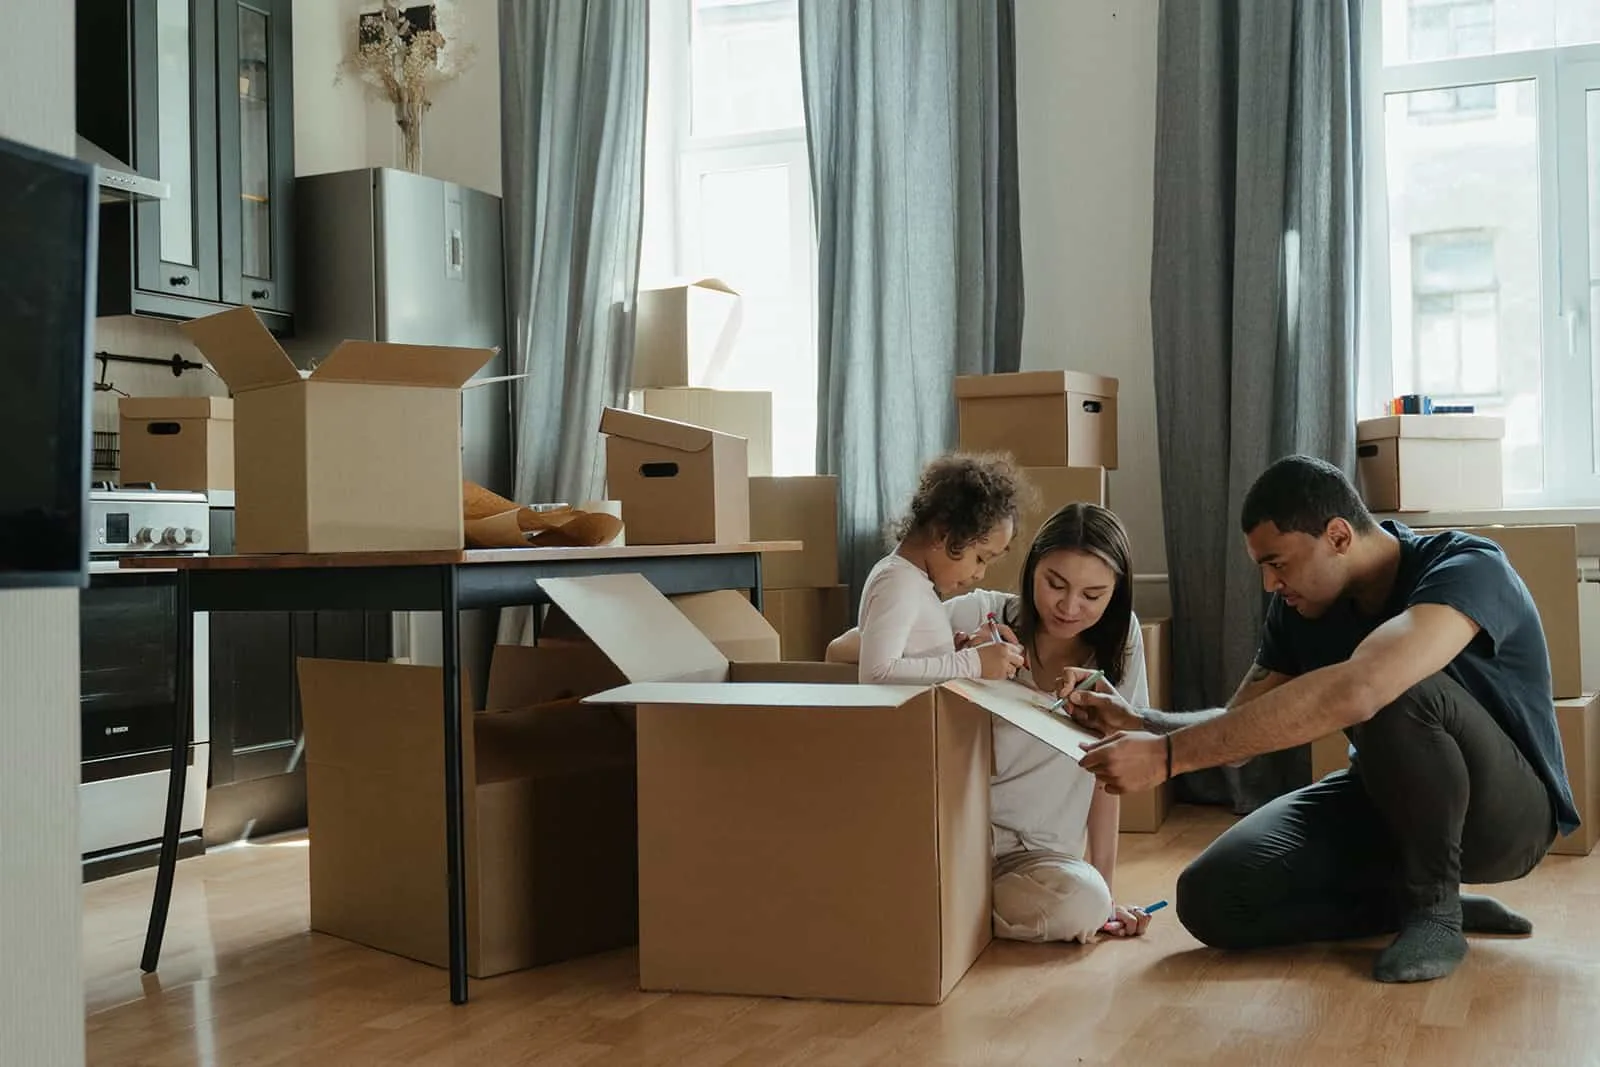 Eine Familie packt Kisten aus, nachdem sie in eine neue Wohnung gezogen ist